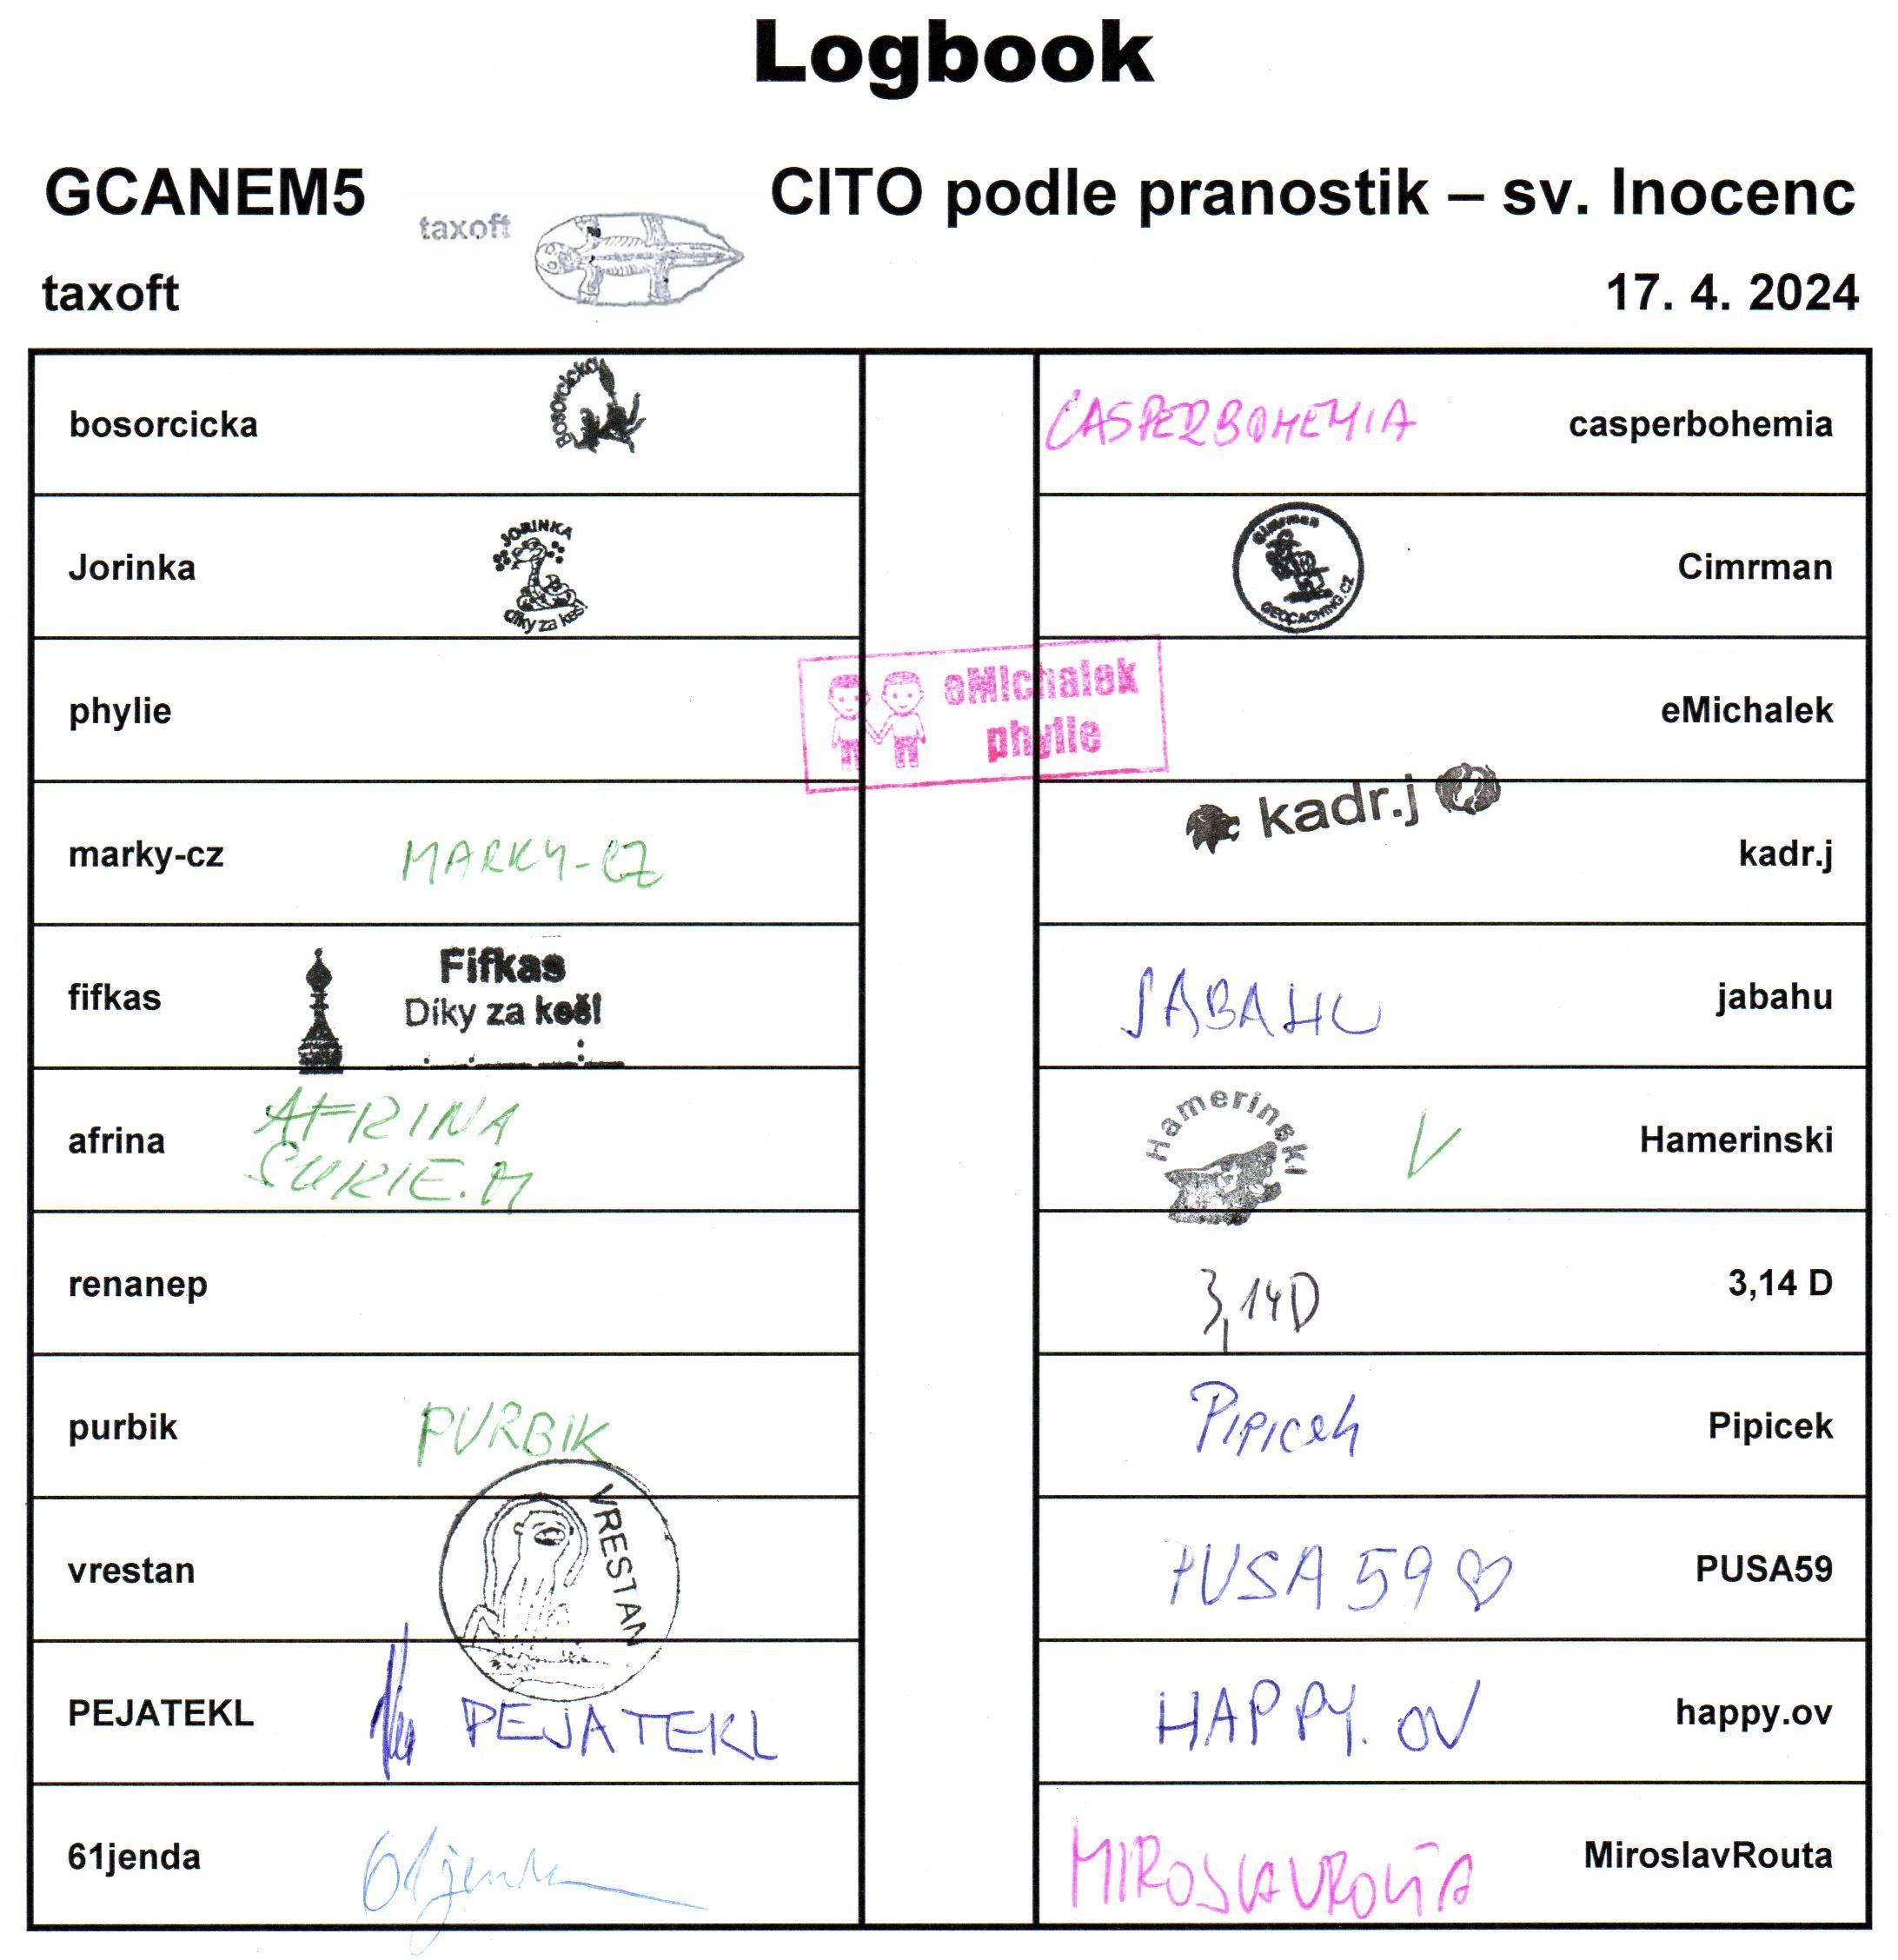 GCANEM5 - CITO podle pranostik - sv. Inocenc - logbook